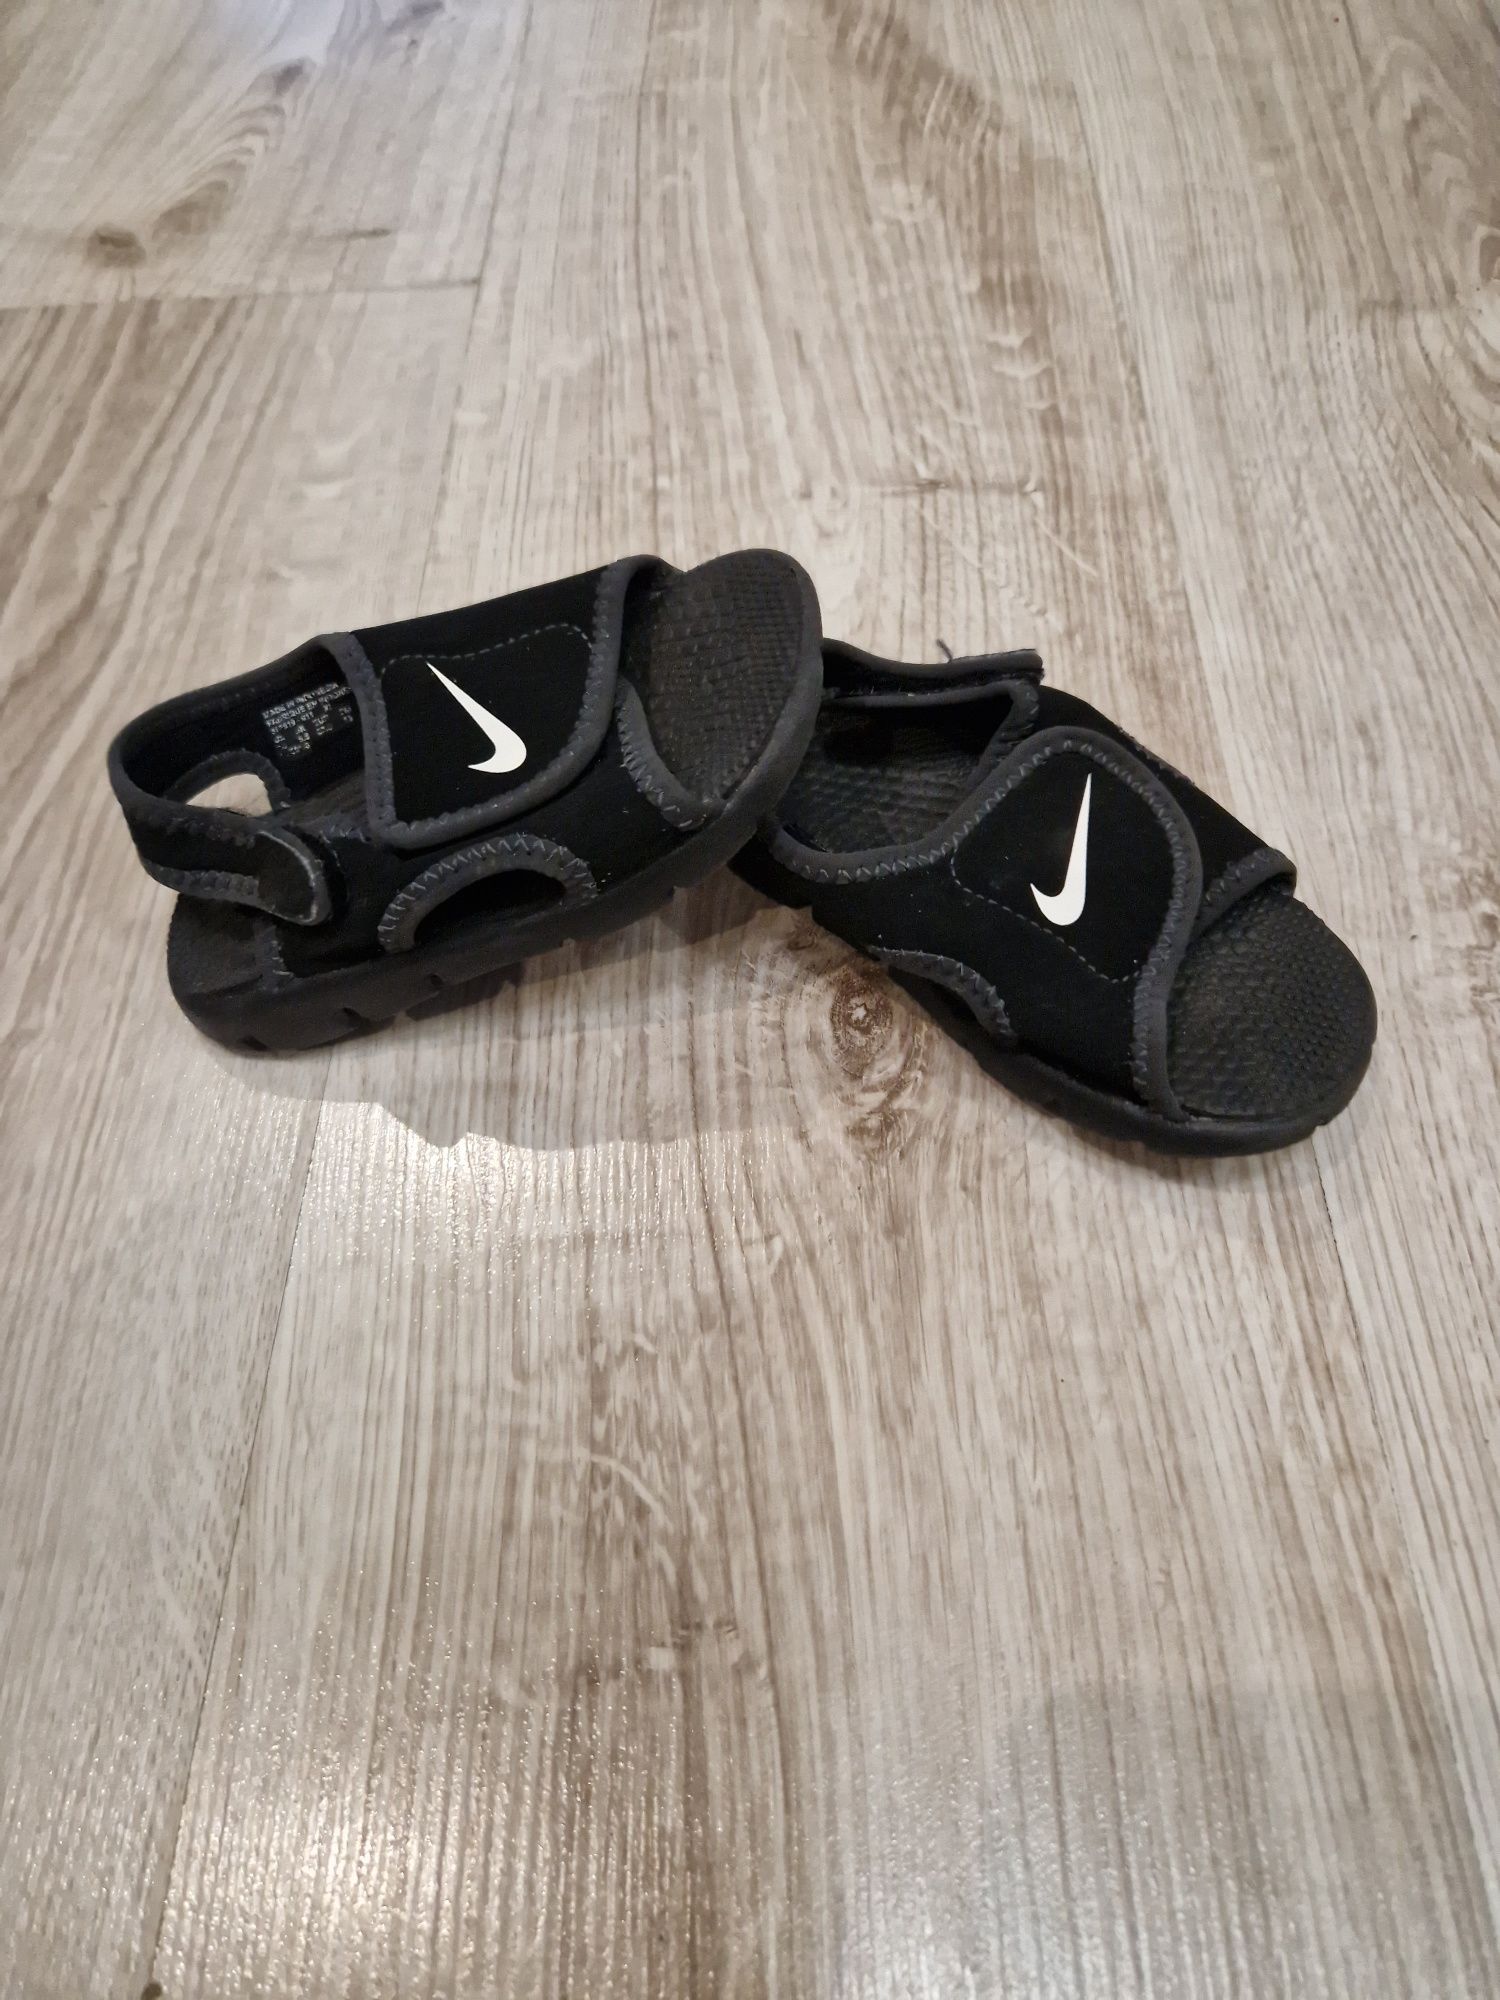 Sandały Nike Sunray Adjust 4 czarne 23.5 , 13 cm. Sandały na rzepy Świ